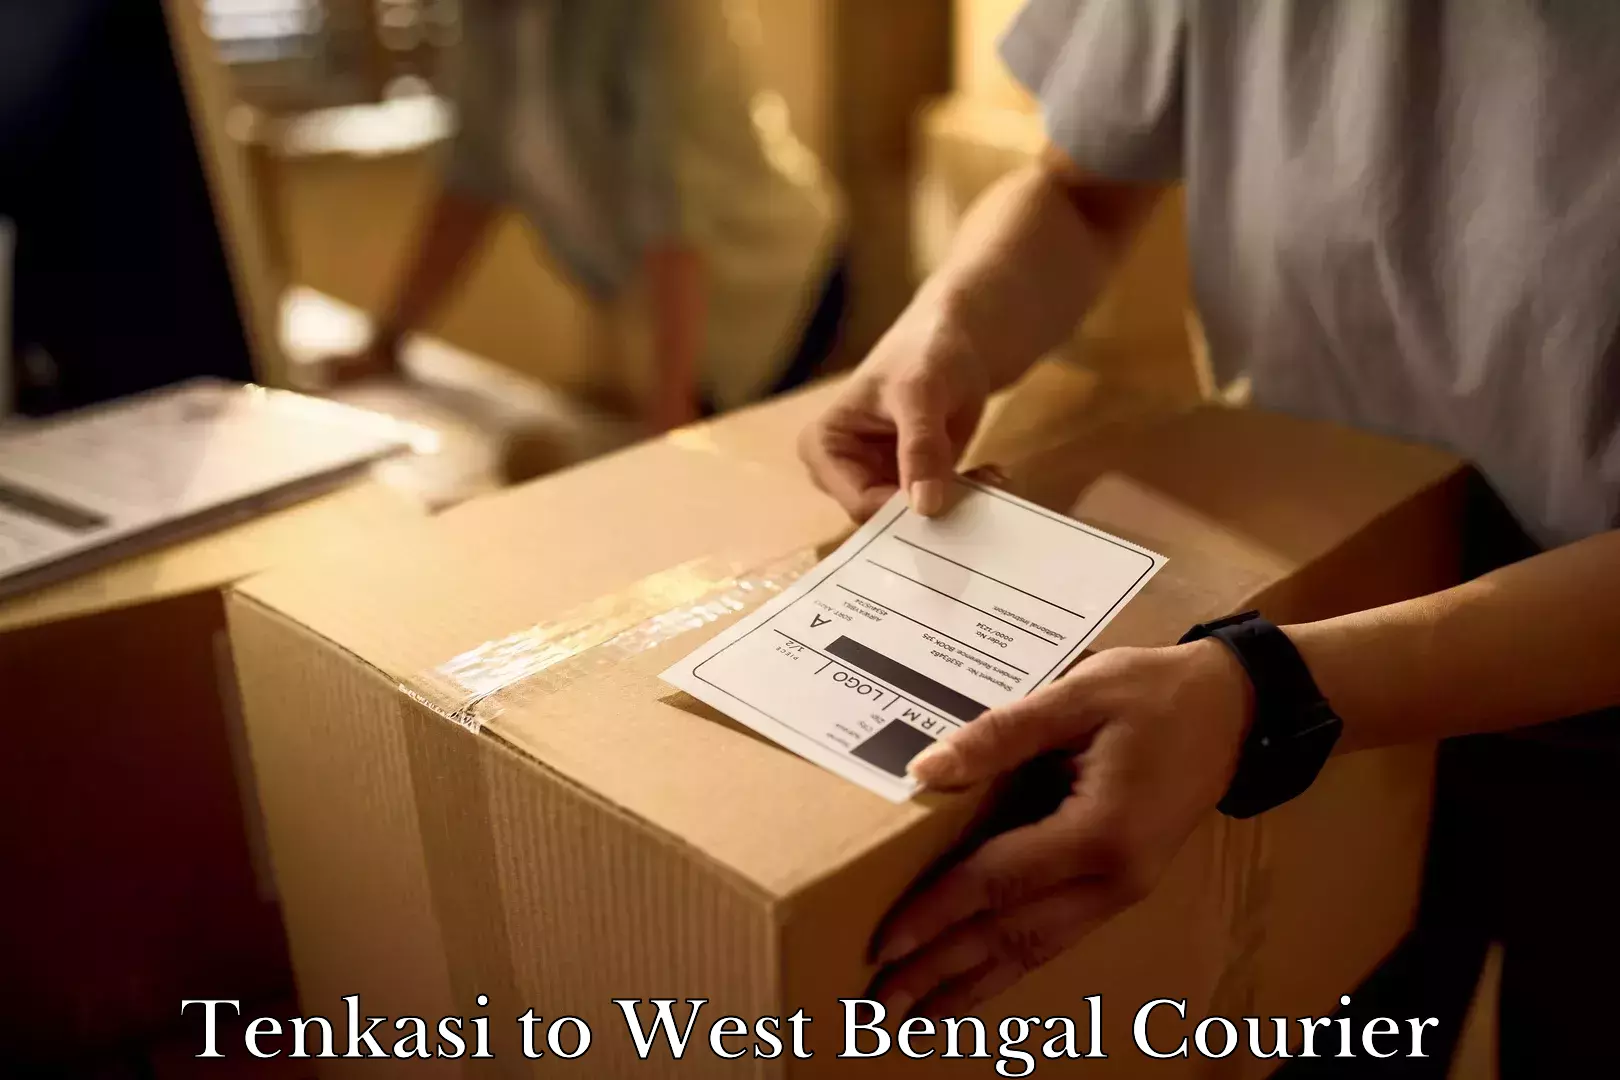 Furniture moving experts Tenkasi to Barasat